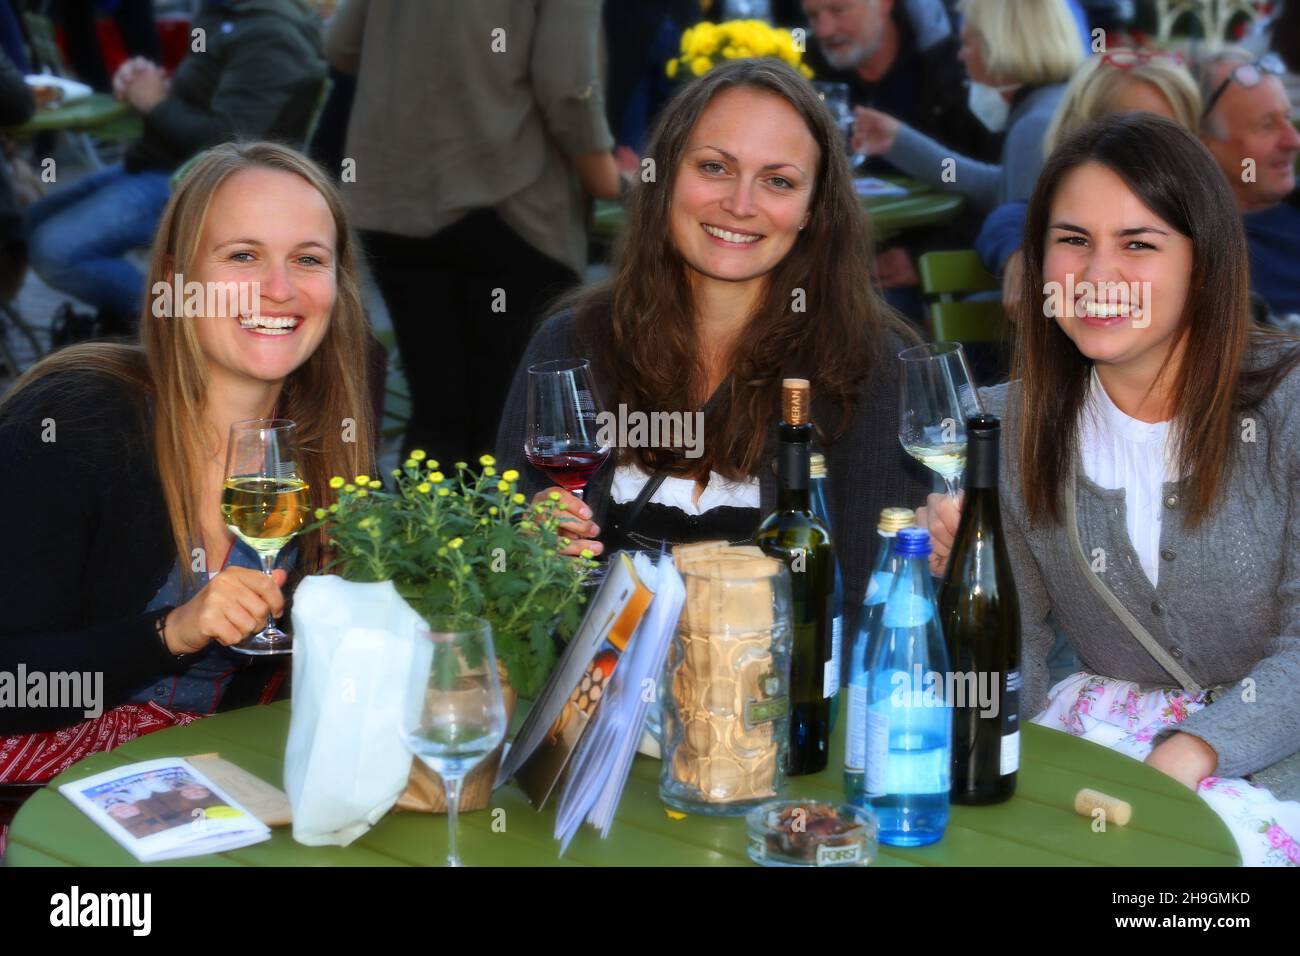 Biergarten, Meran, Kurstadt, Weinfest, Trachtenfest, Unterhaltung und Freude im Biergarten beim Wein und Bier trinken Stockfoto